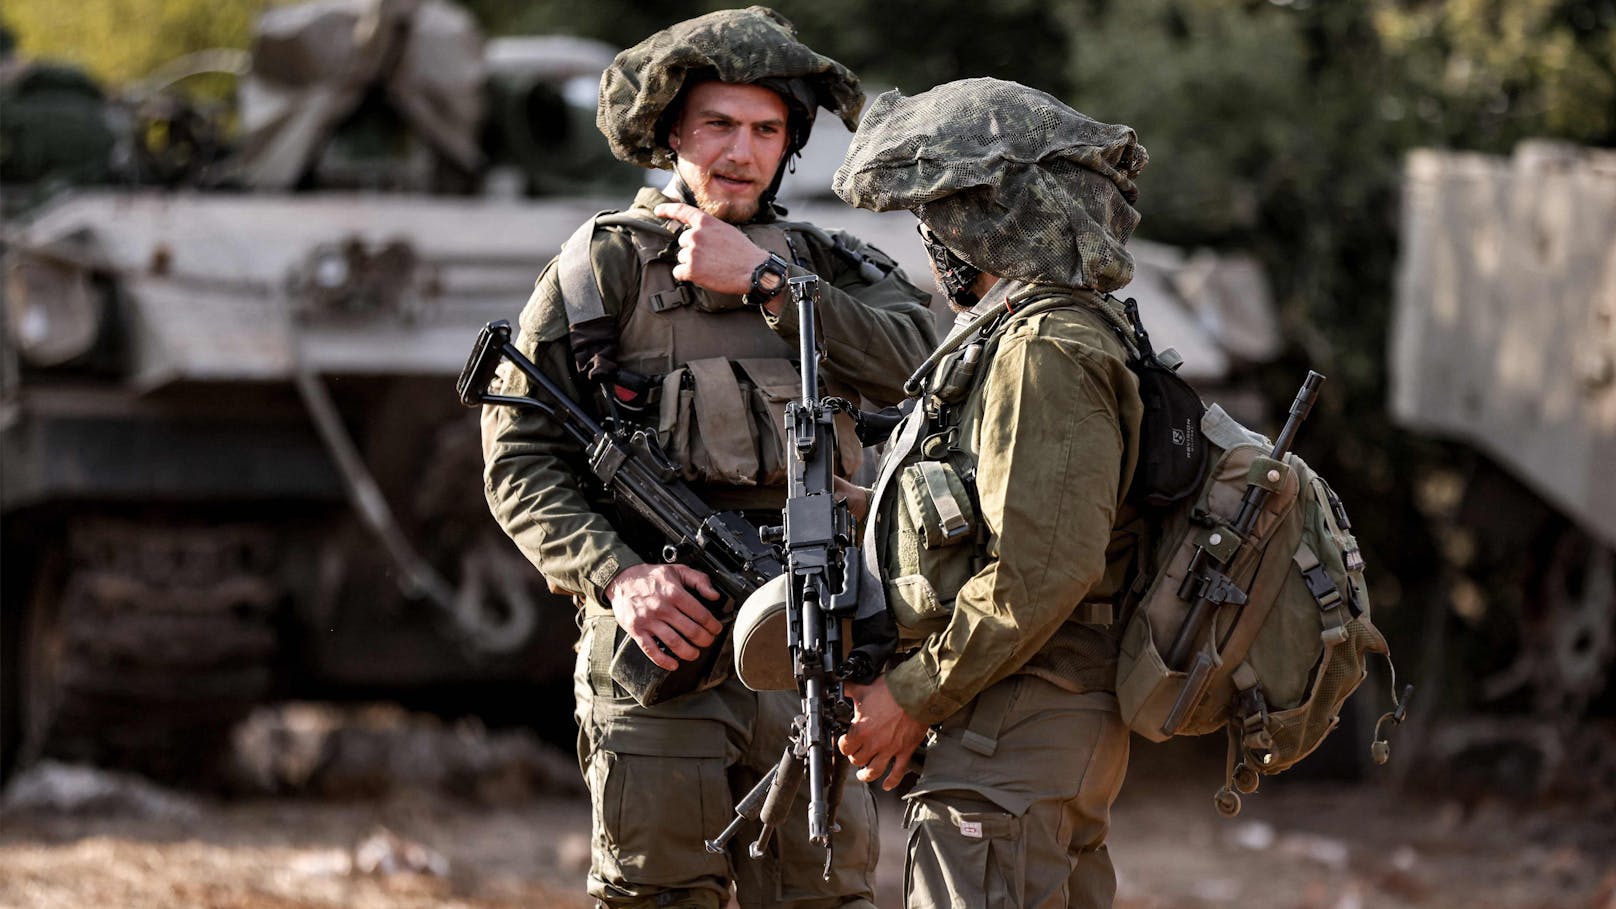 Israelische Armee bedrohte deutsches Fernsehteam